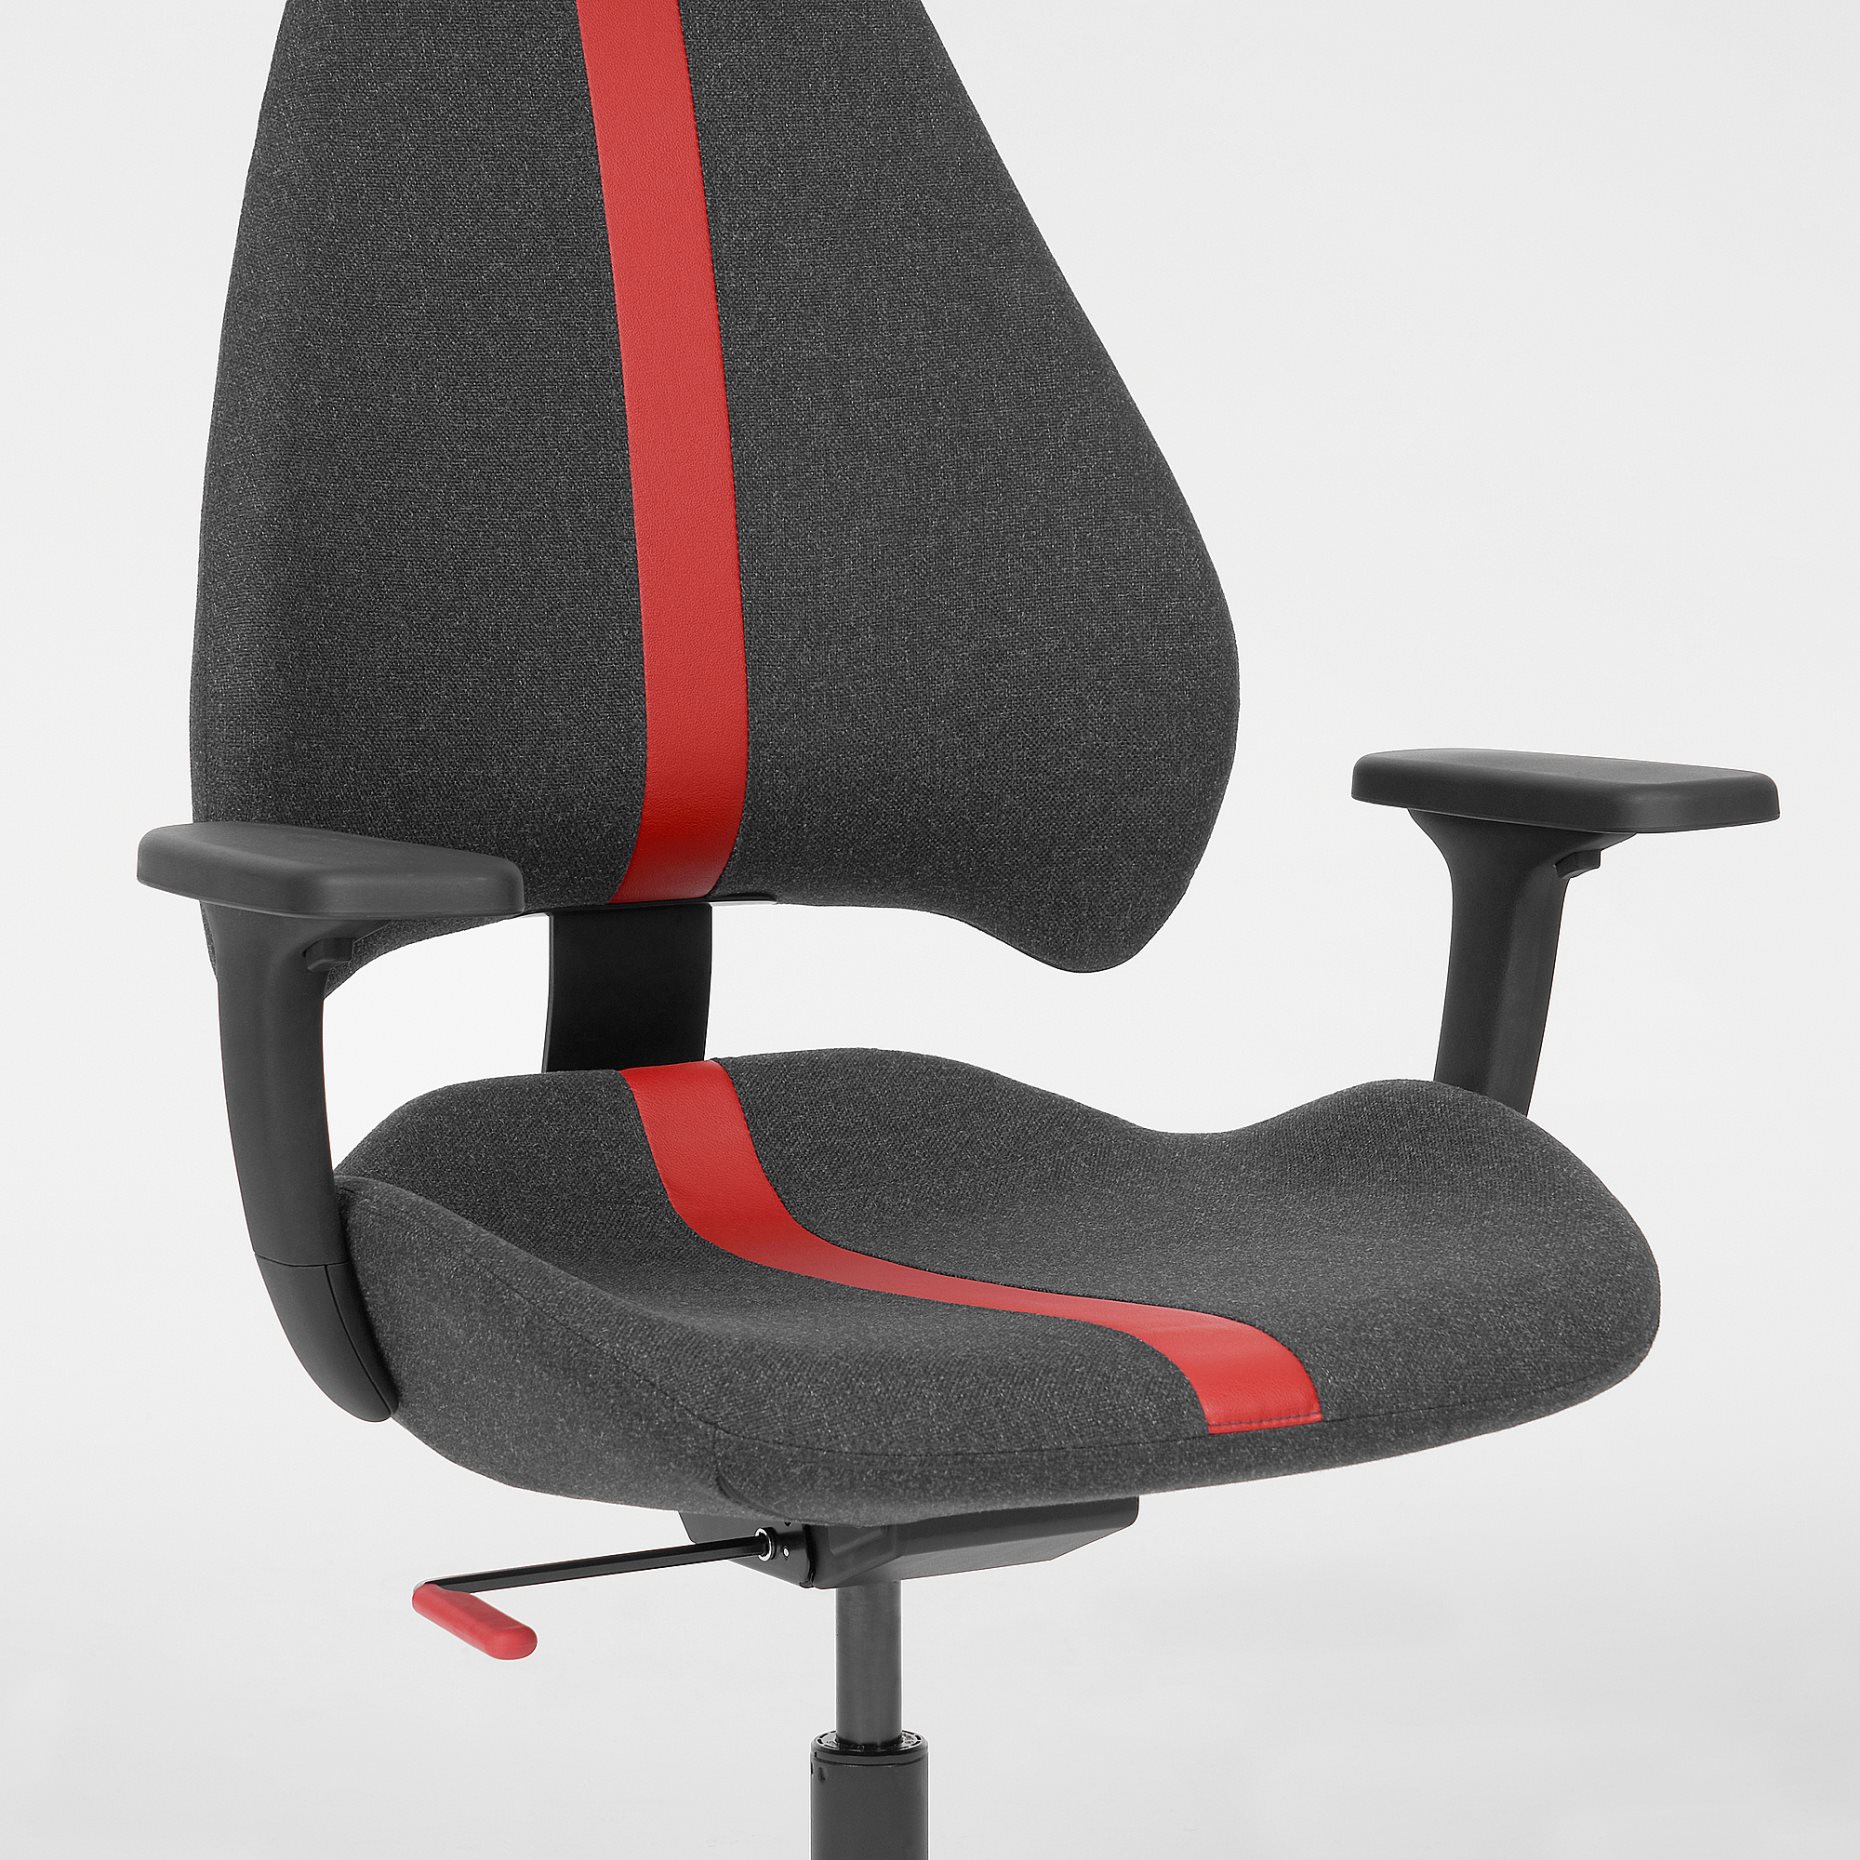 UPPSPEL/GRUPPSPEL, γραφείο/καρέκλα gaming, 180x80 cm, 194.409.66